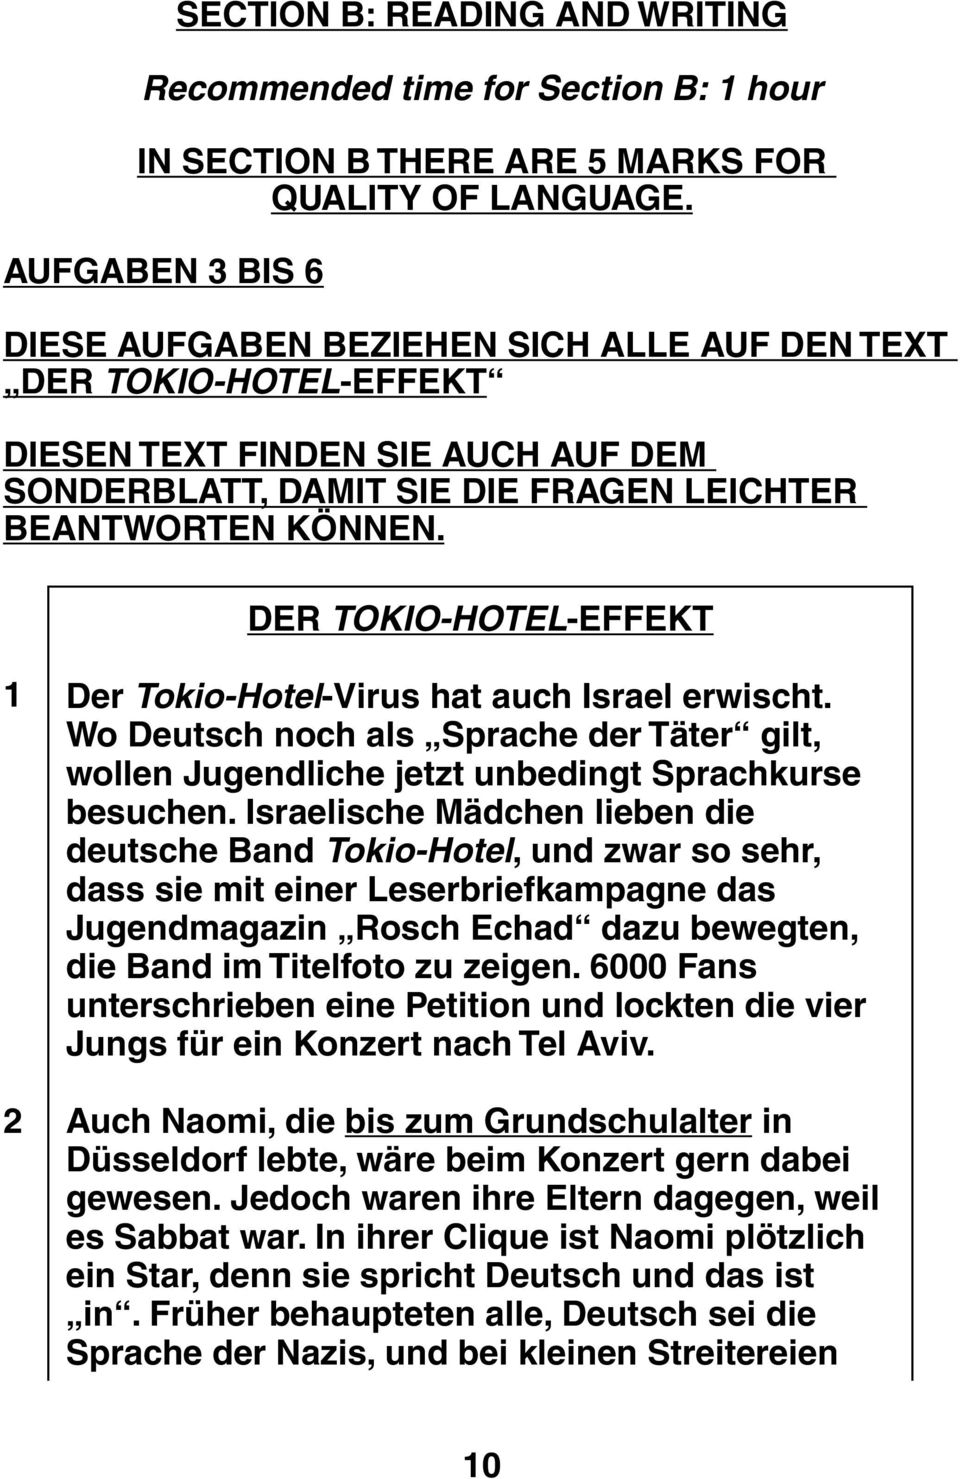 DER TOKIO-HOTEL-EFFEKT 1 2 Der Tokio-Hotel-Virus hat auch Israel erwischt. Wo Deutsch noch als Sprache der Täter gilt, wollen Jugendliche jetzt unbedingt Sprachkurse besuchen.